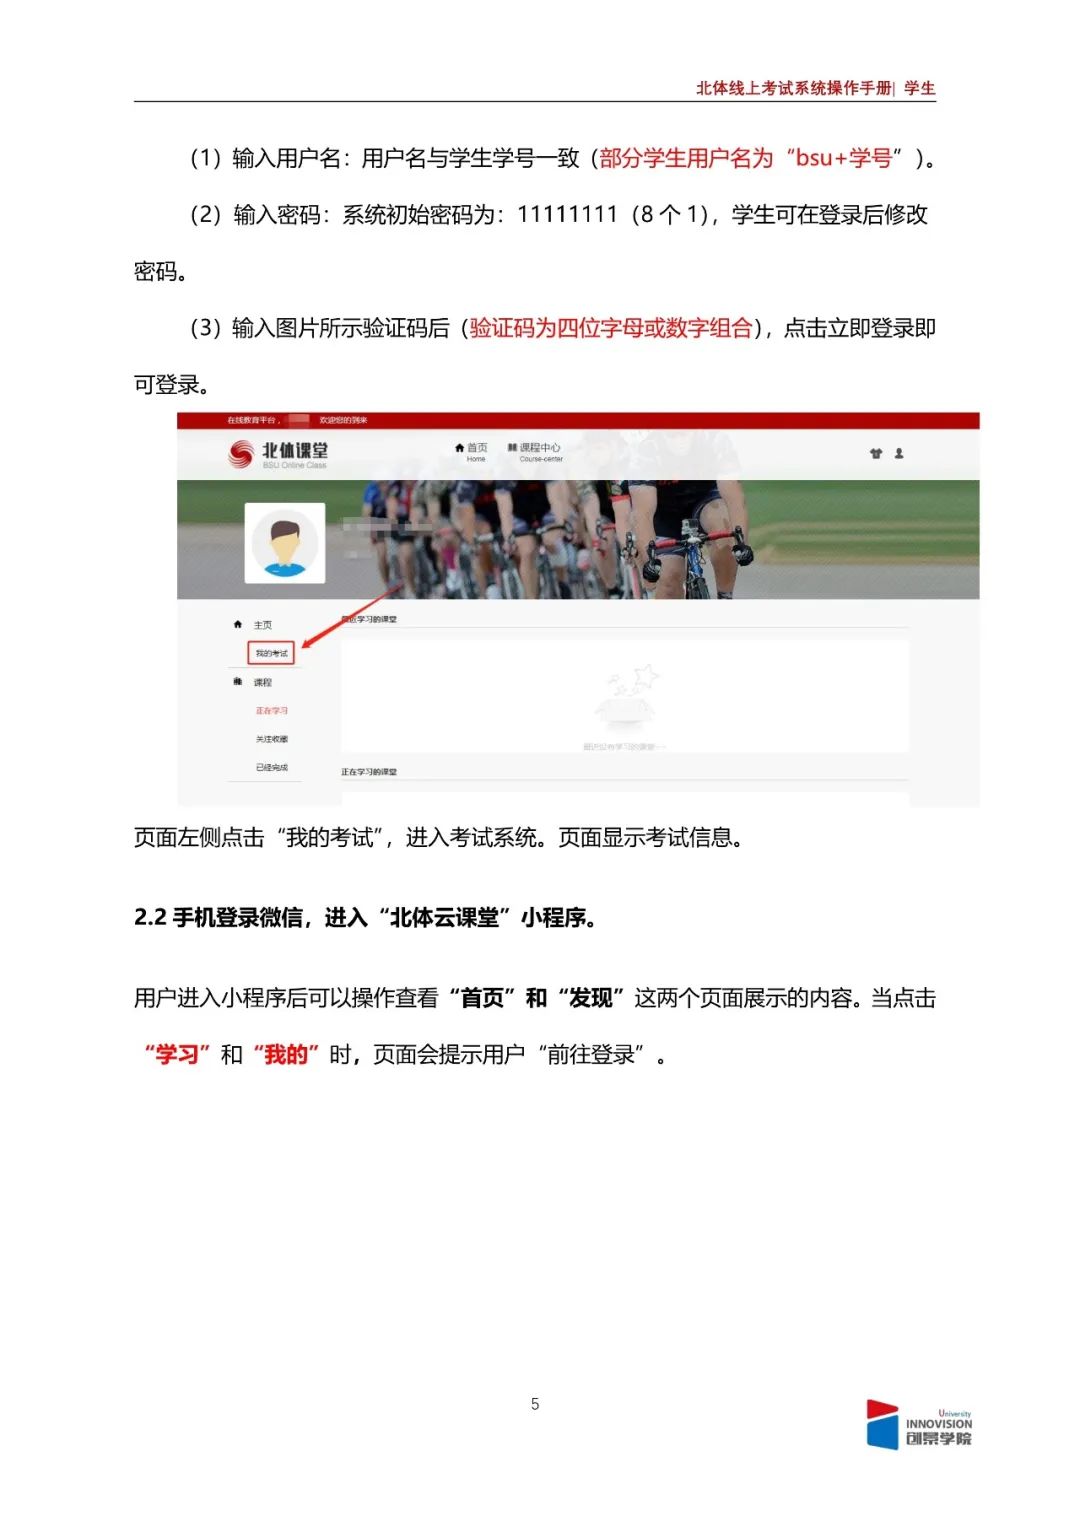 2020年北京体育大学线上考试操作方法